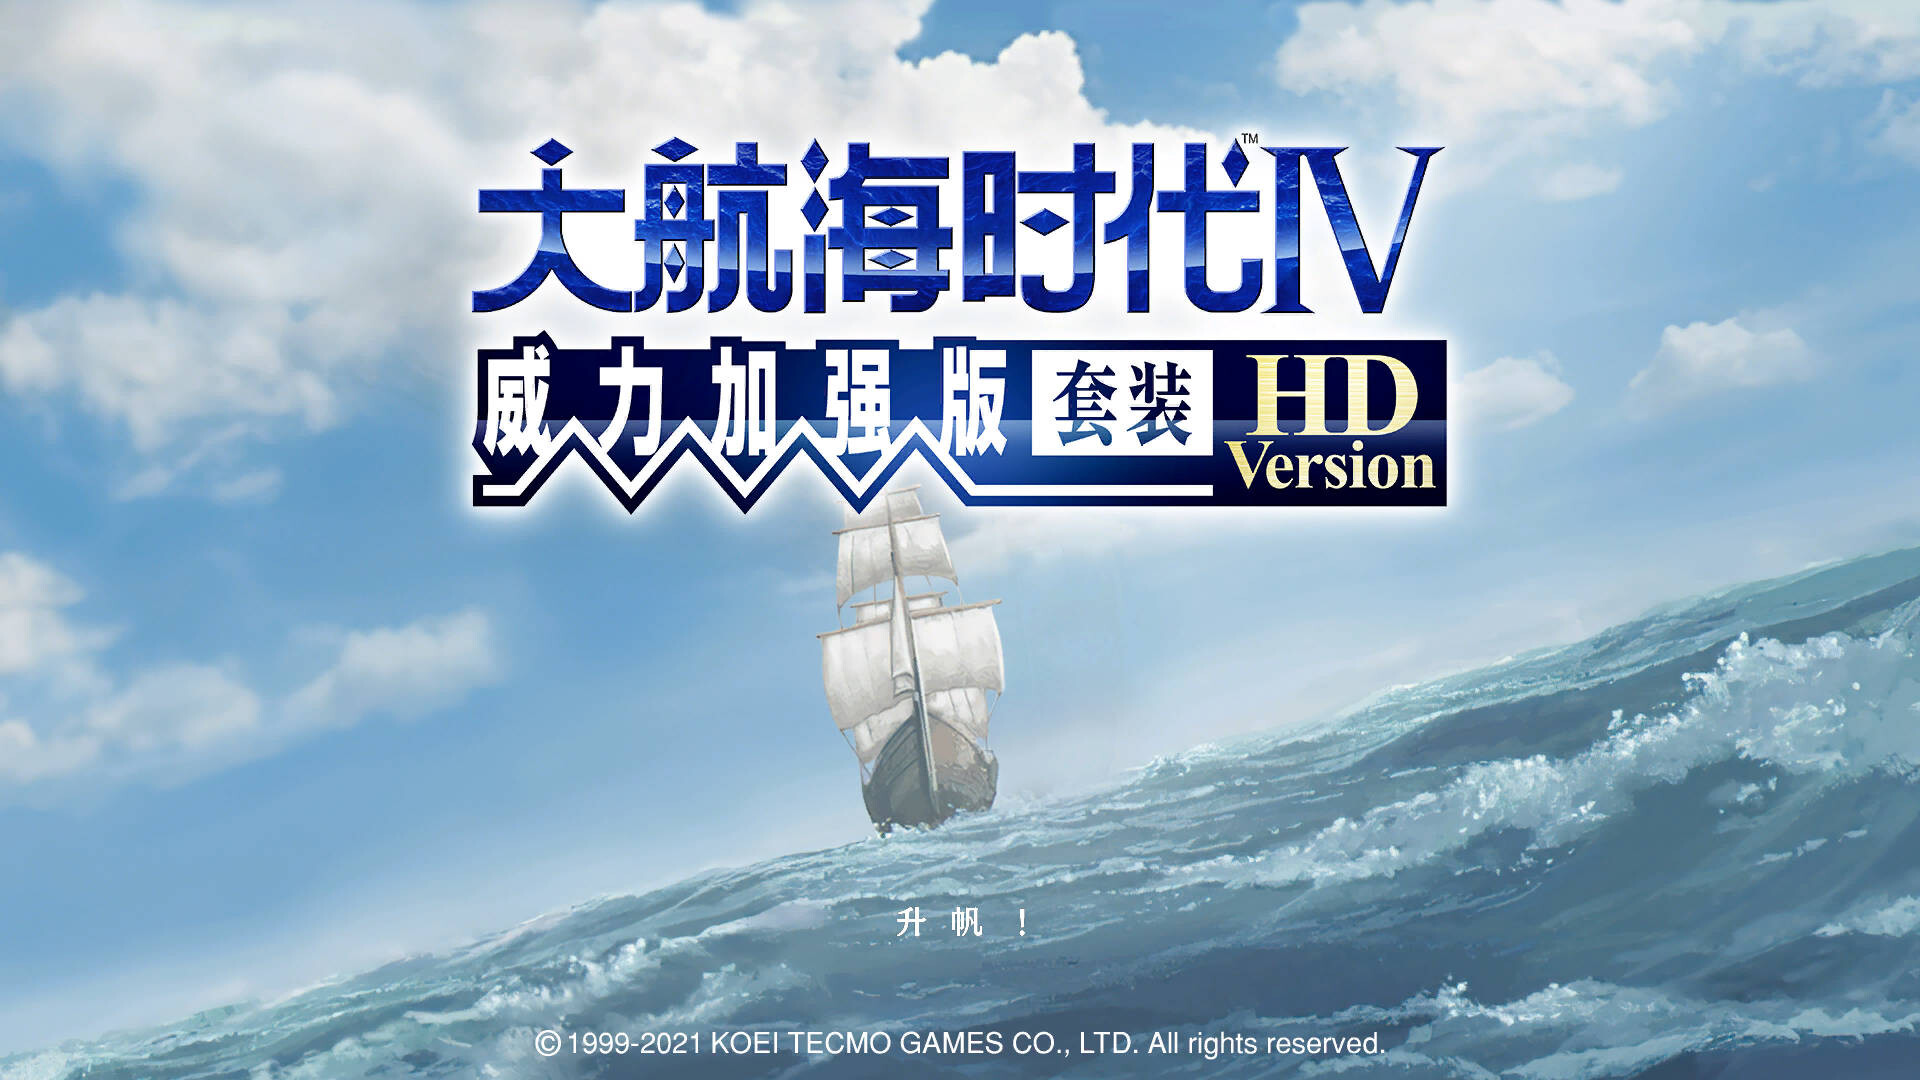 大航海时代Ⅳ 威力加强版套装 HD Version (WinMac)中文免安装版